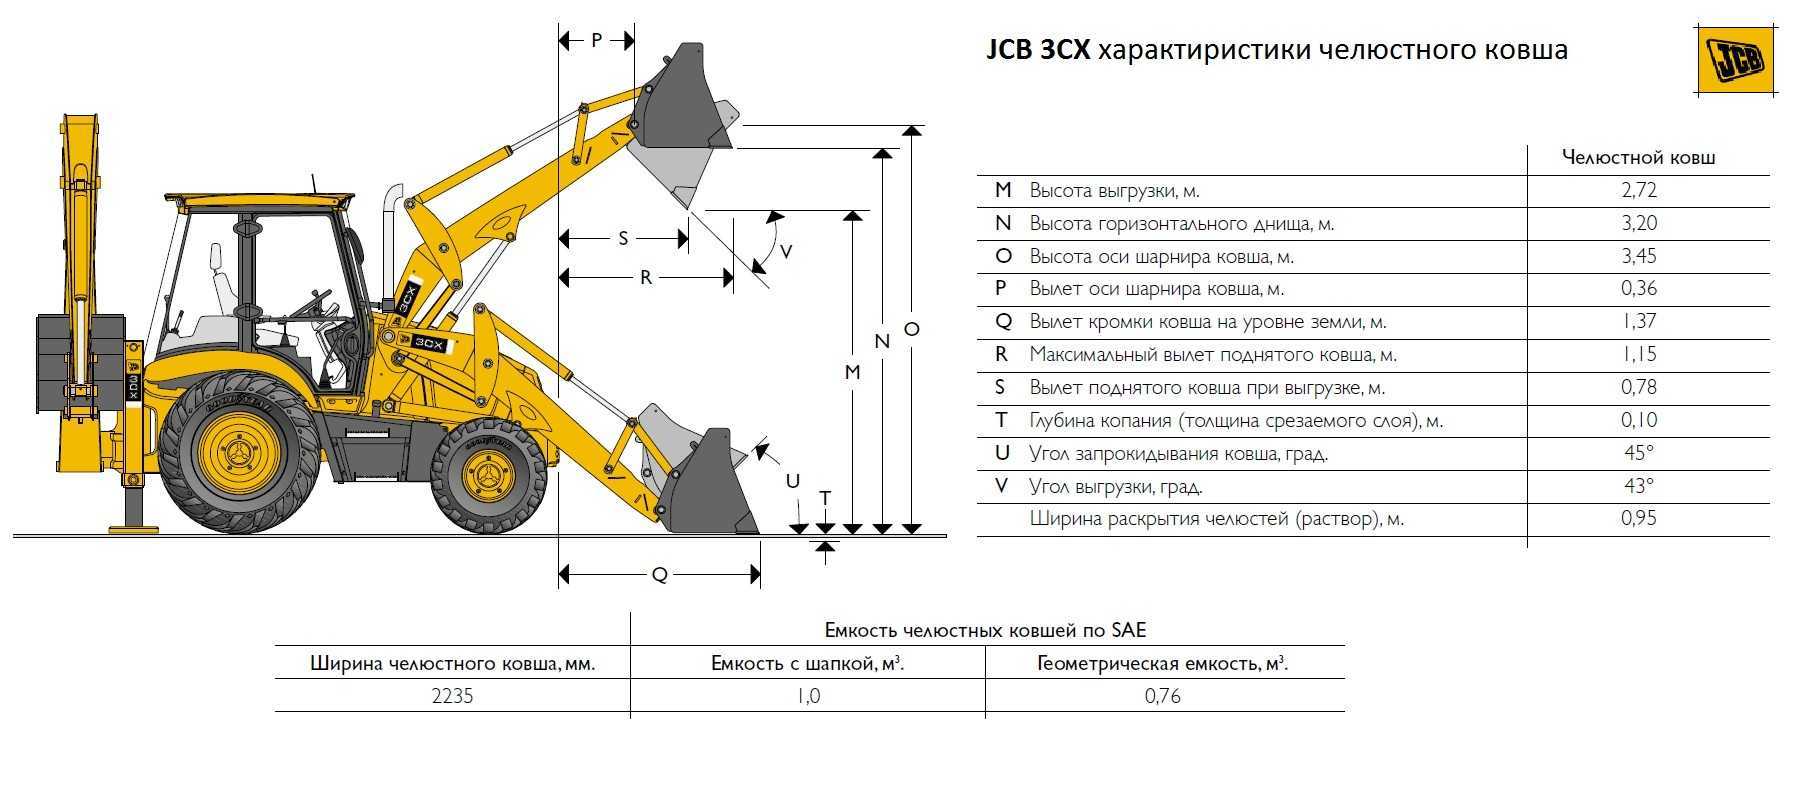 Jcb 3cx: устройство и технические характеристики погрузчика